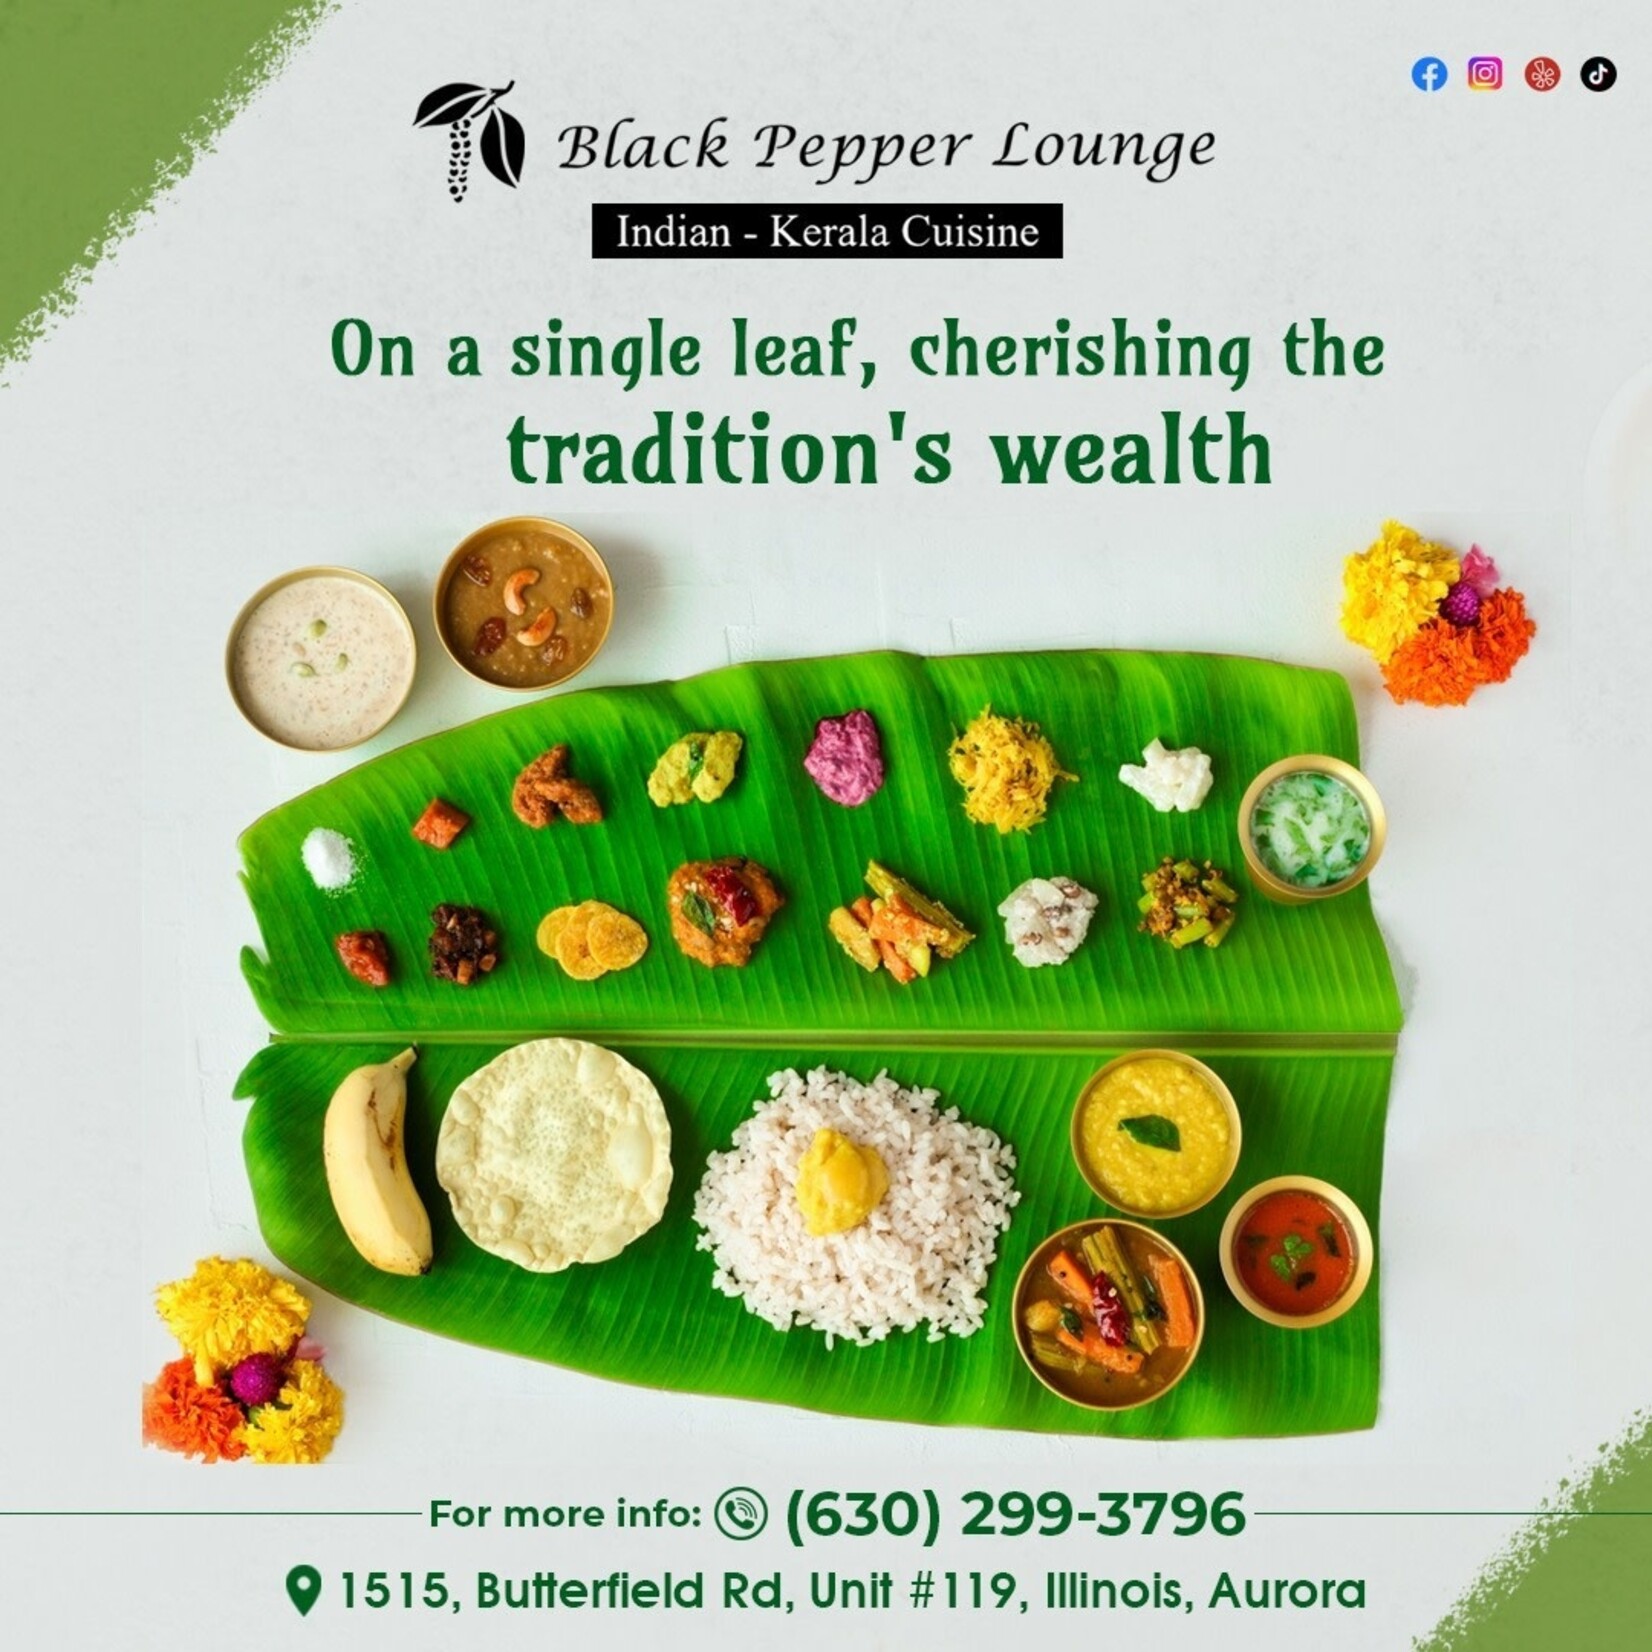 Black Pepper Lounge-Aurora Black Pepper Lounge Indian Kerala Cuisine Aurora